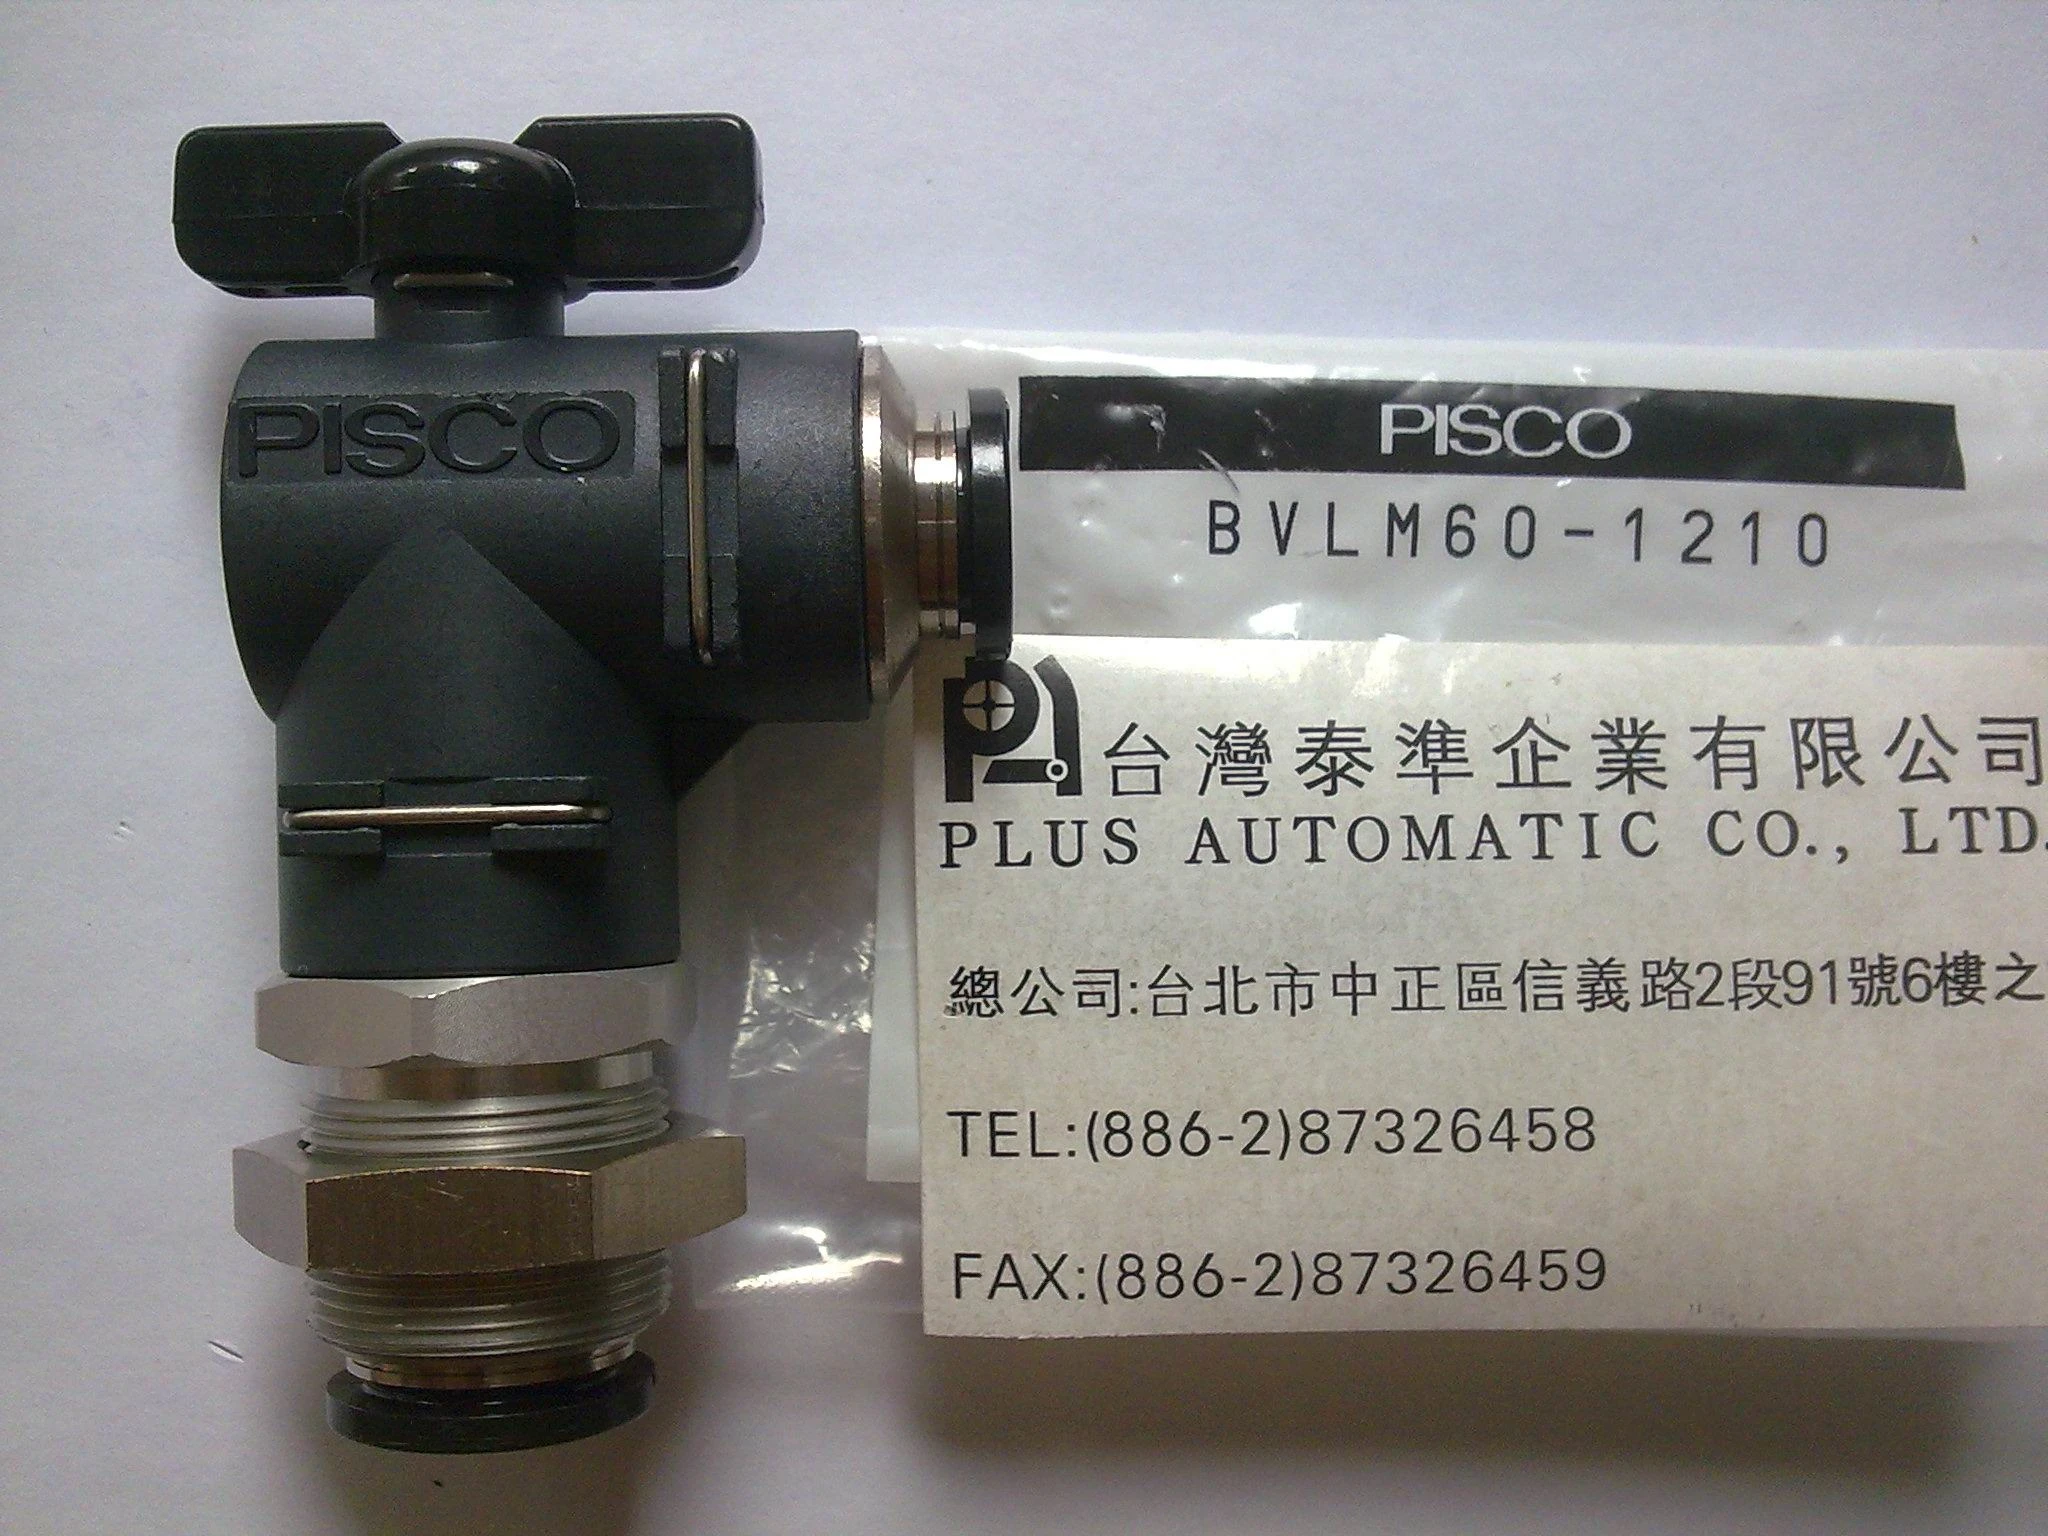 PISCO BVLM60-1210